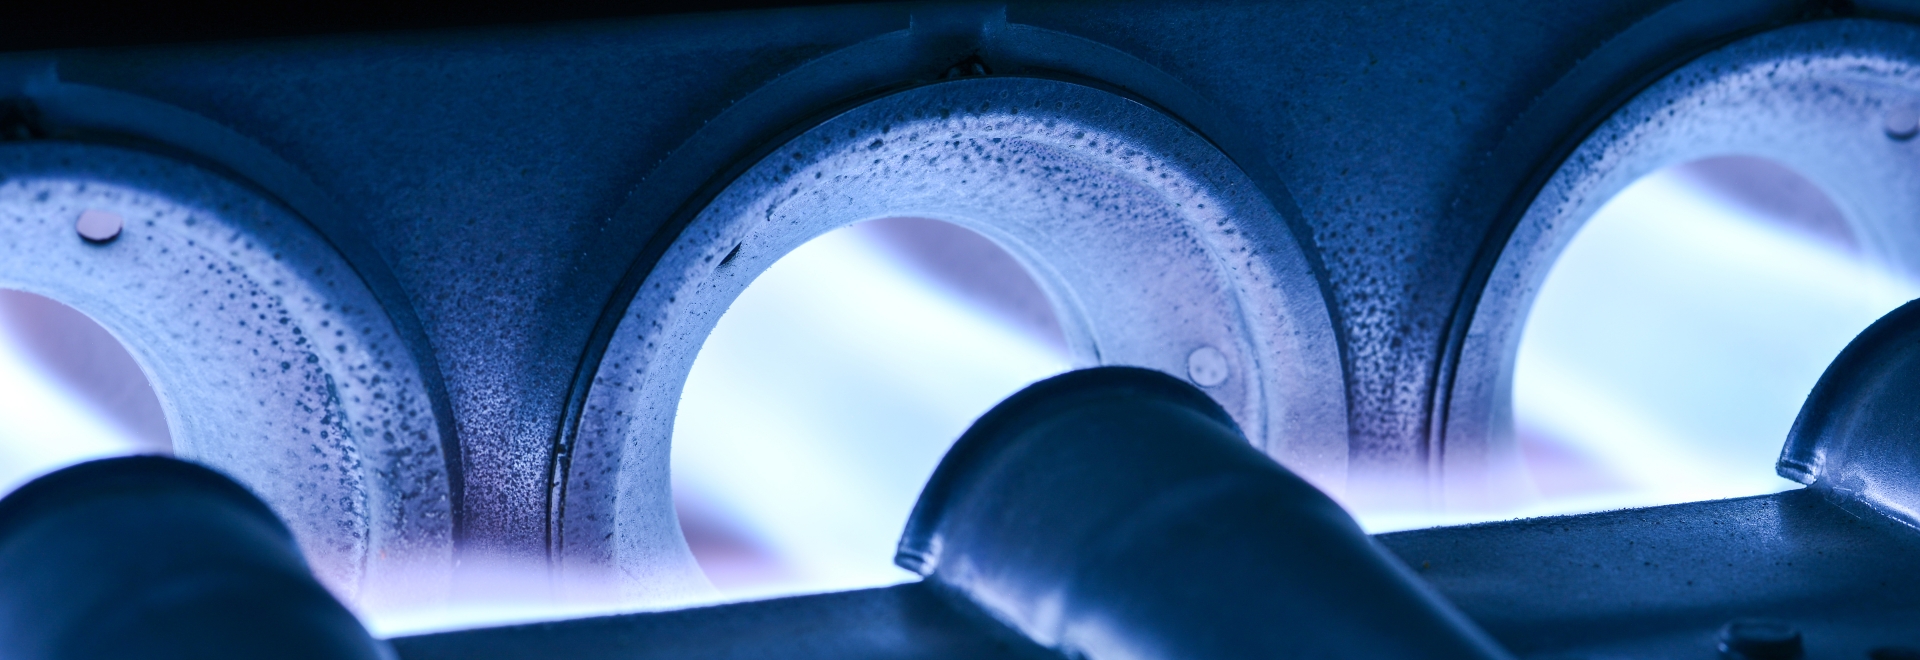 closeup image of a furnace